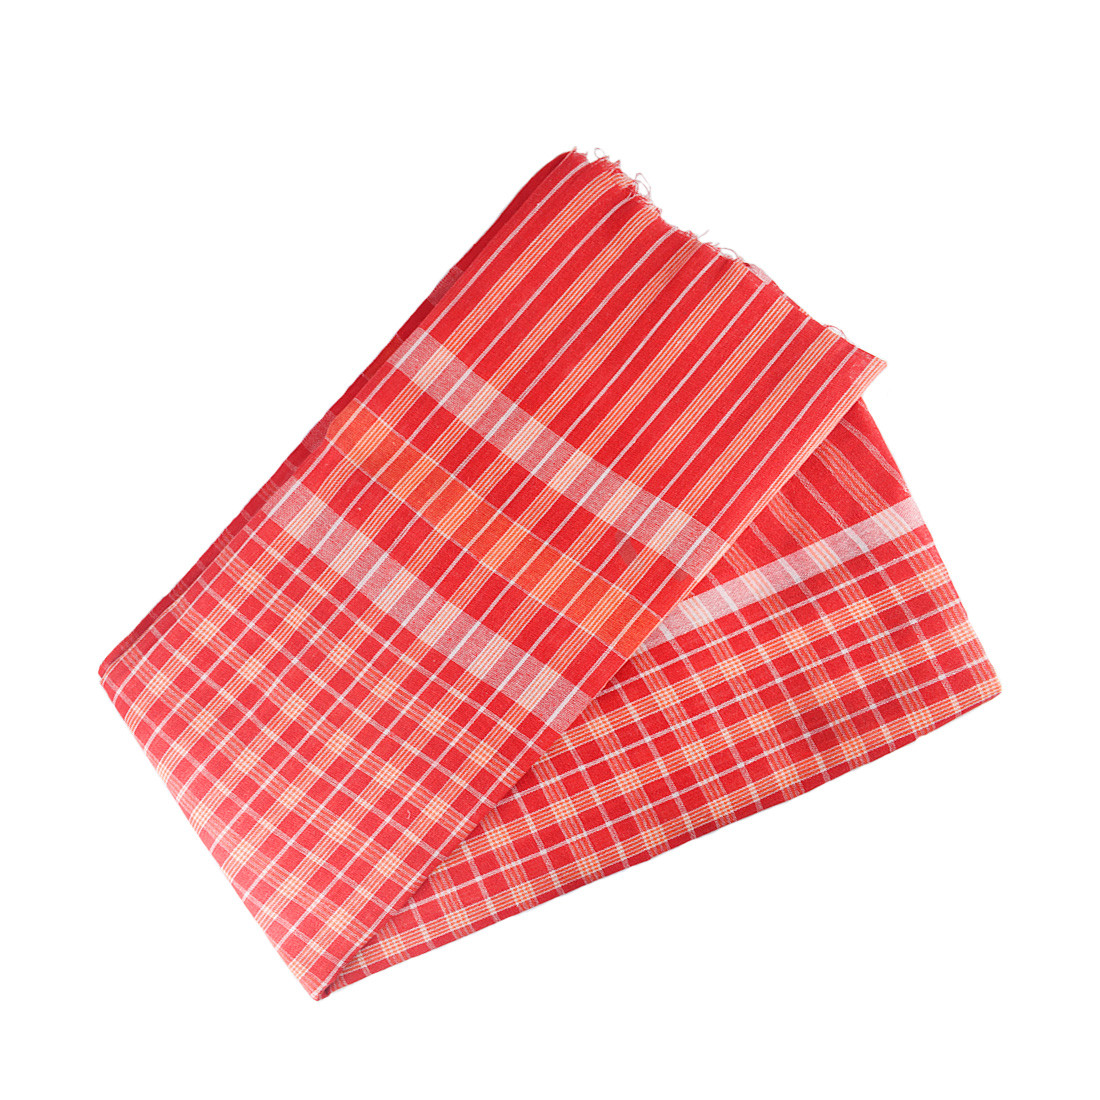 Cotton Traditional Handloom Gamcha or Gamchha/Gamucha/Towel (Red & White)